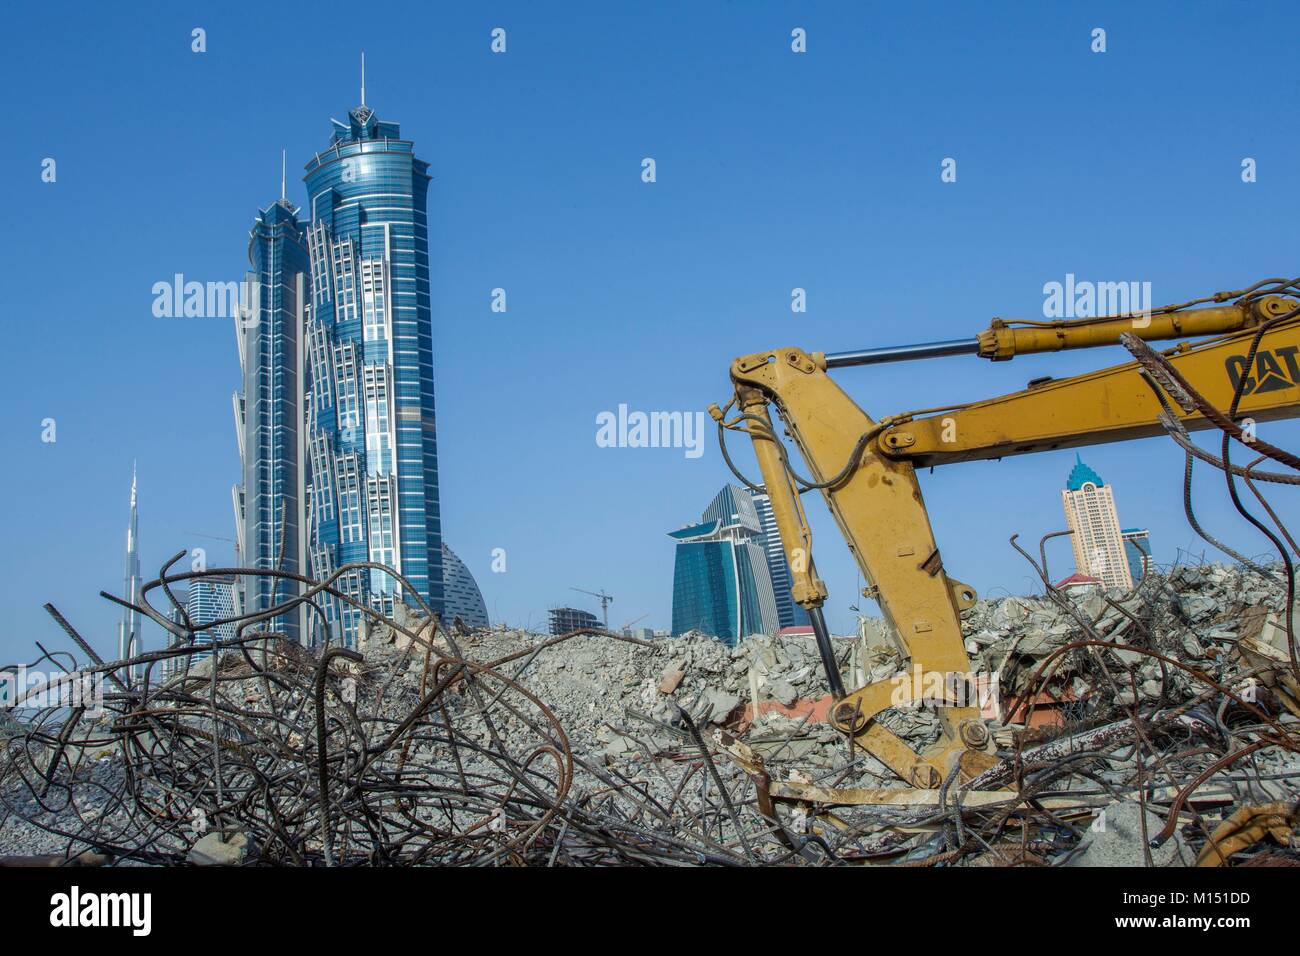 Emirats arabes unis, dubaï, Twin Towers de Marriott Marquis Hotel et du site de construction à l'avant-plan Banque D'Images